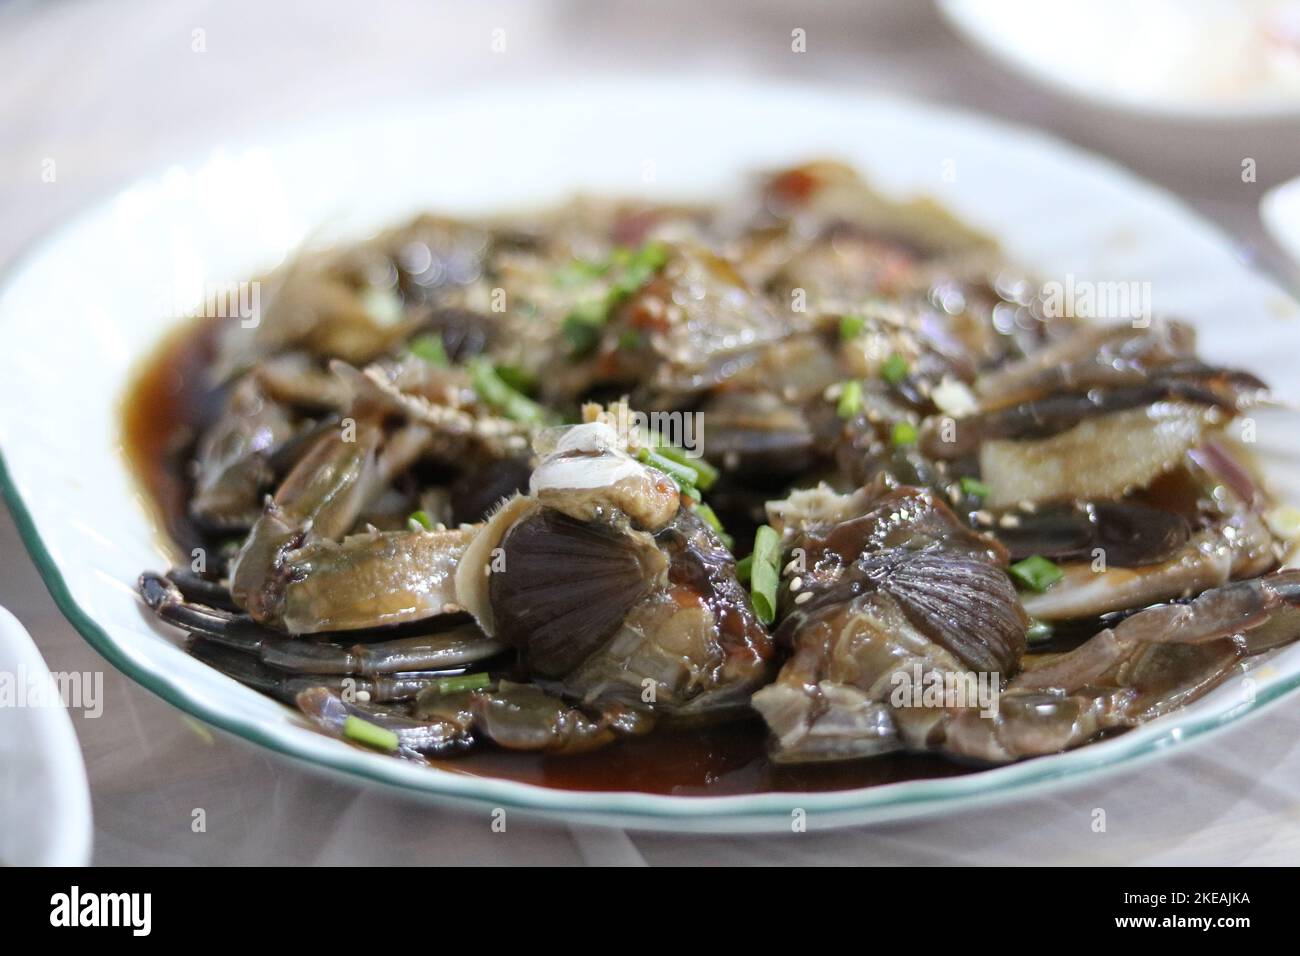 Ganjang gejang or raw crab marinated in soy sauce in Korean cuisine Stock Photo